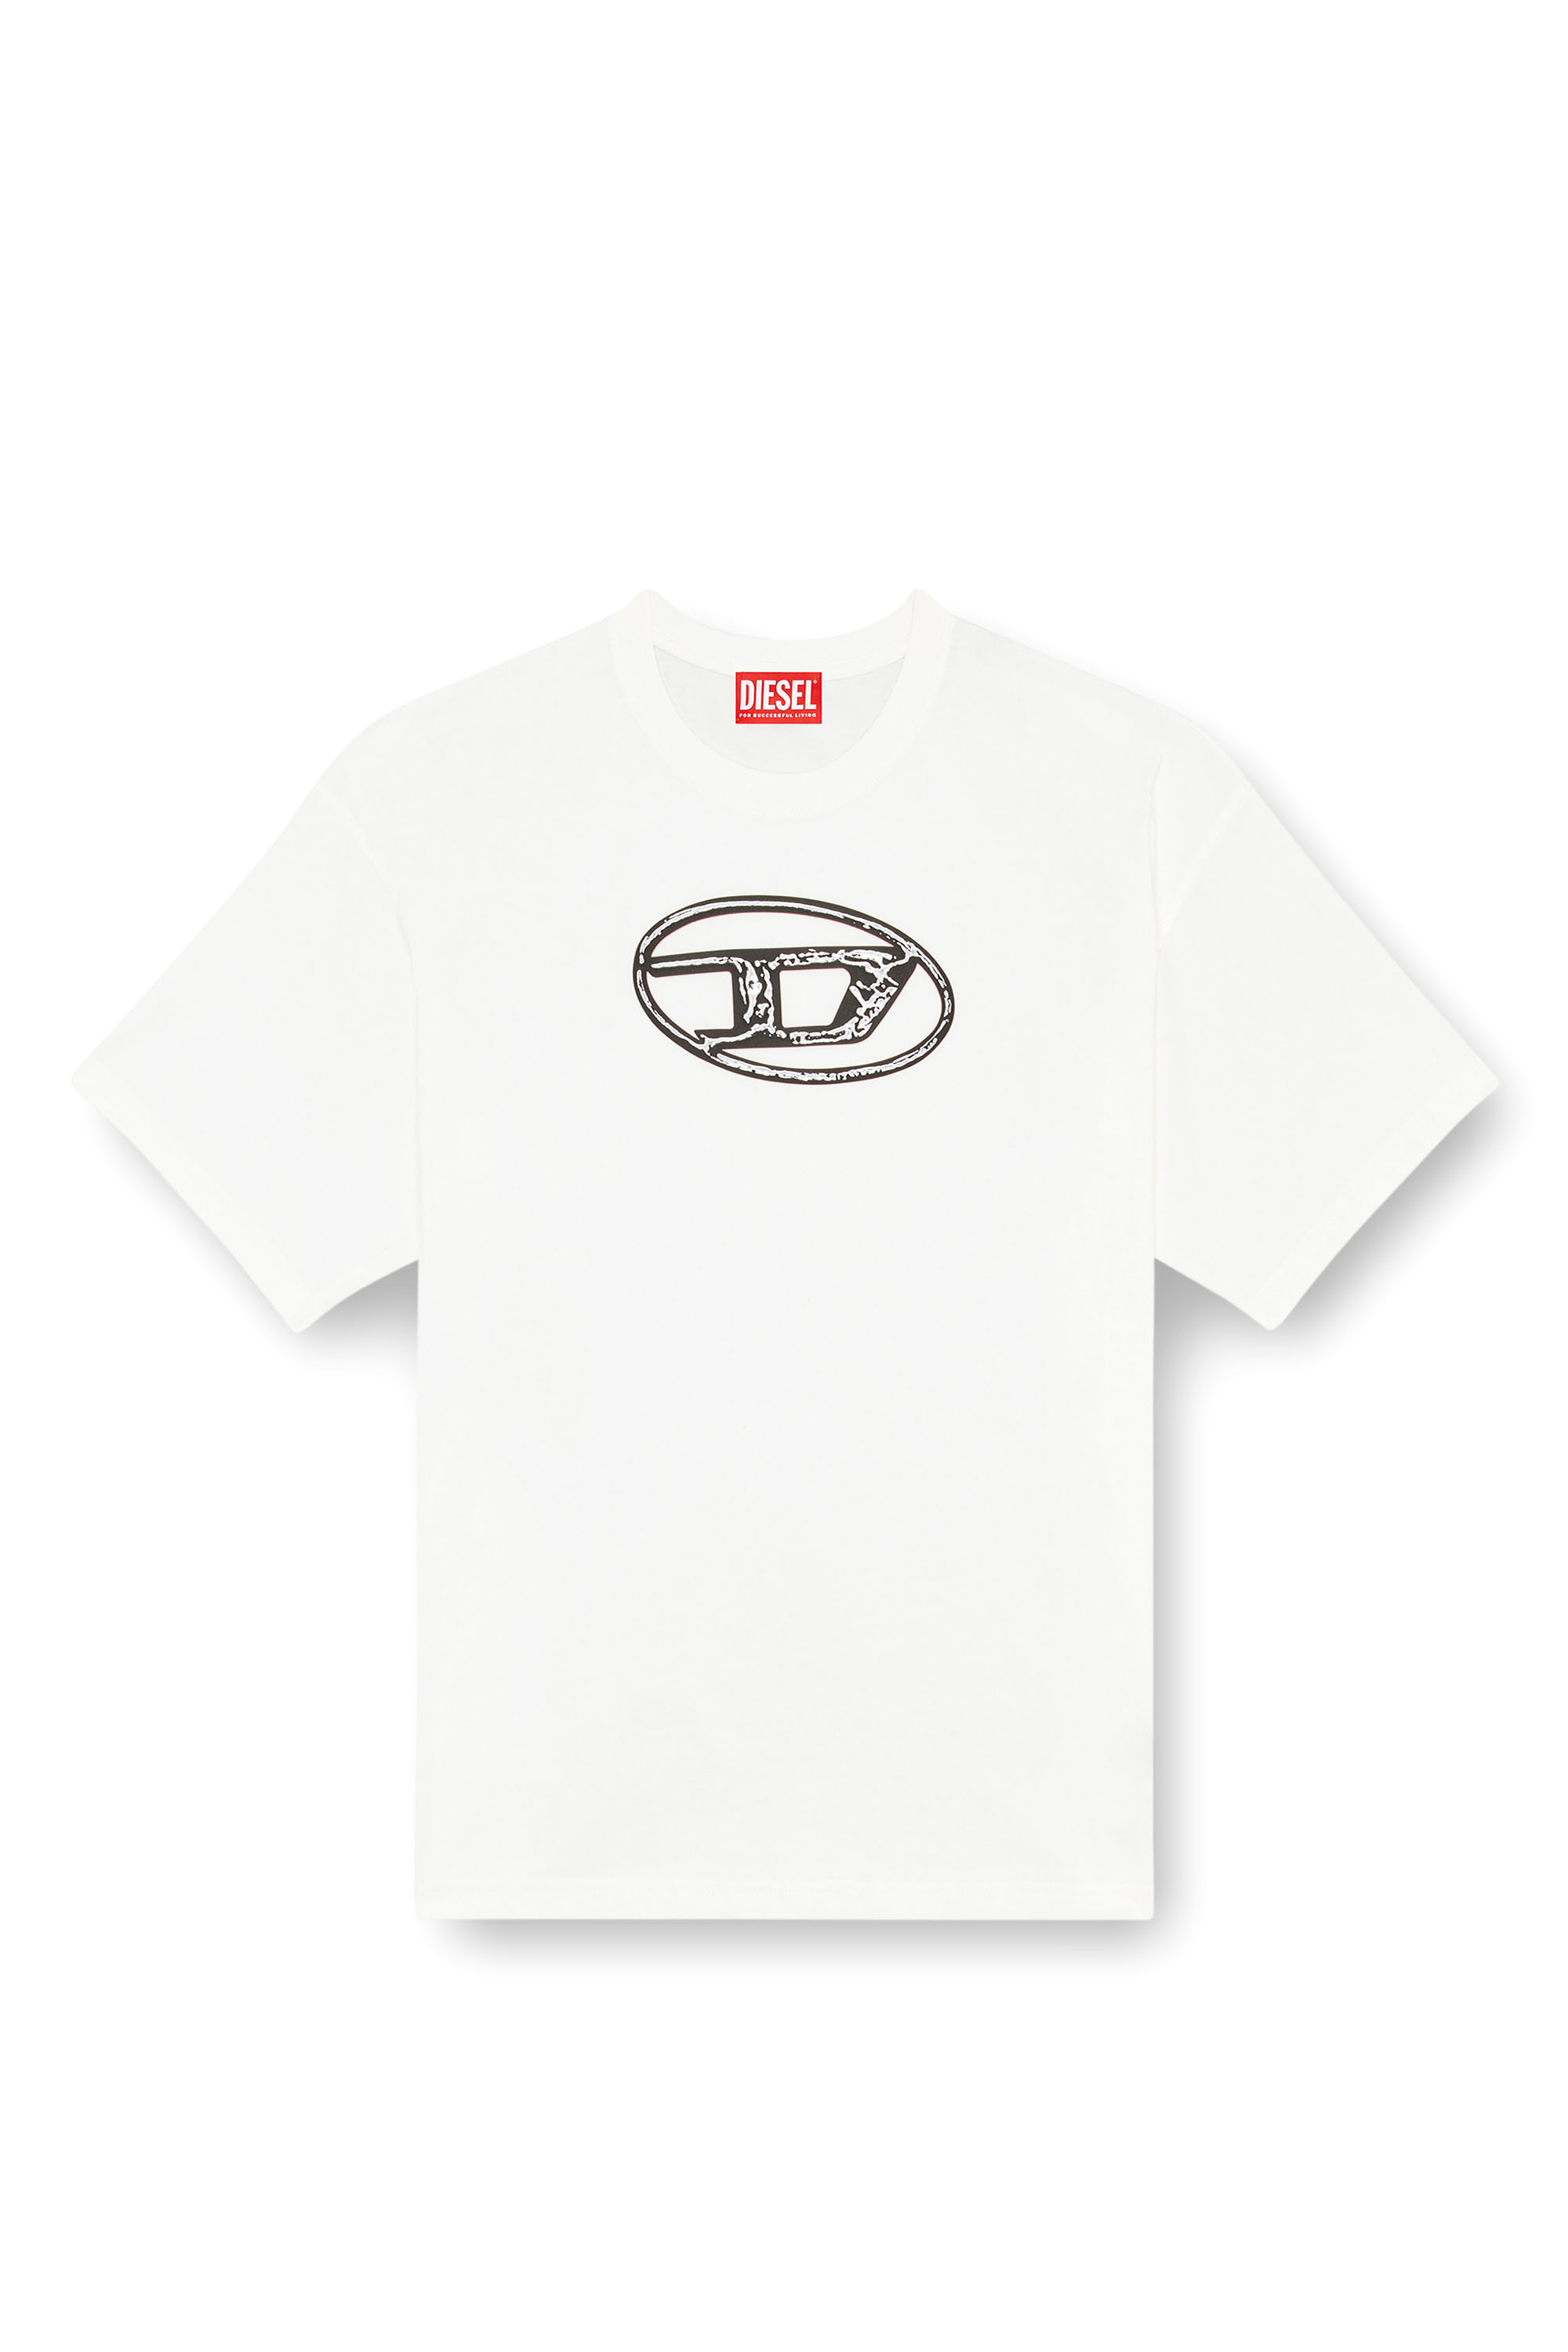 Diesel - T-BOXT-Q22, Homme T-shirt délavé avec imprimé Oval D in Blanc - Image 3